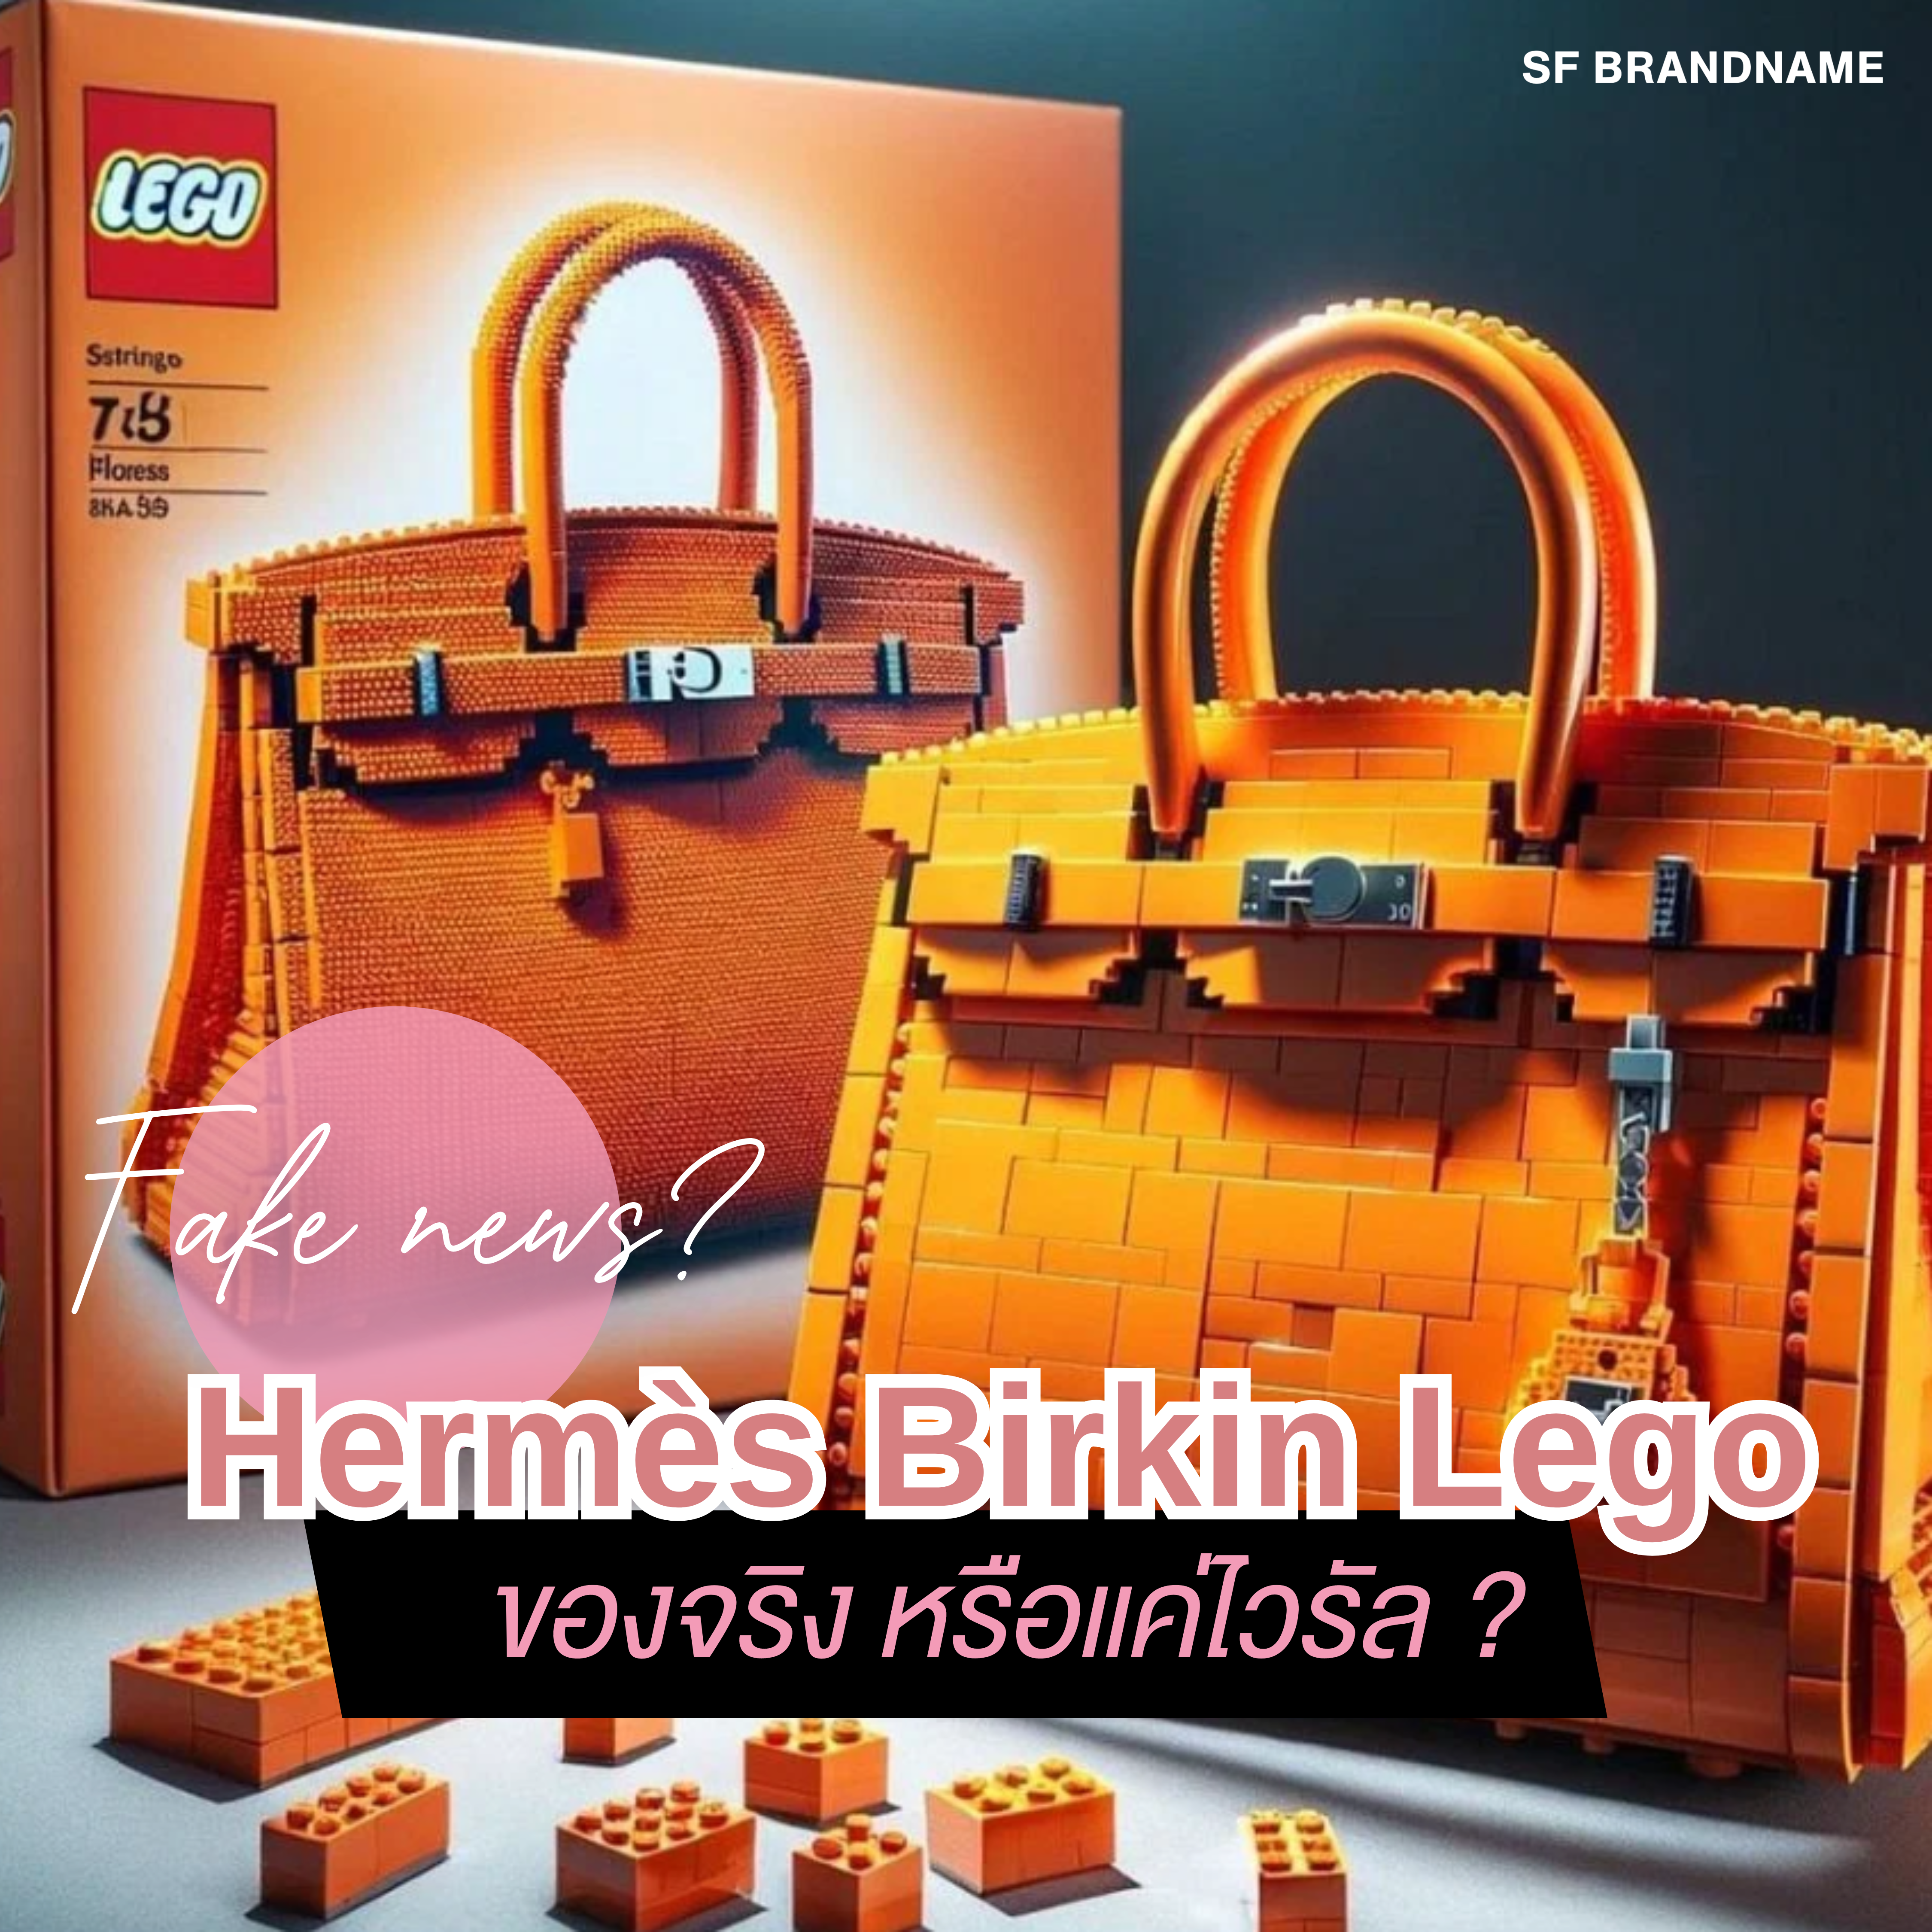 Hermès Birkin Lego ของจริงหรือแค่ไวรัล ?